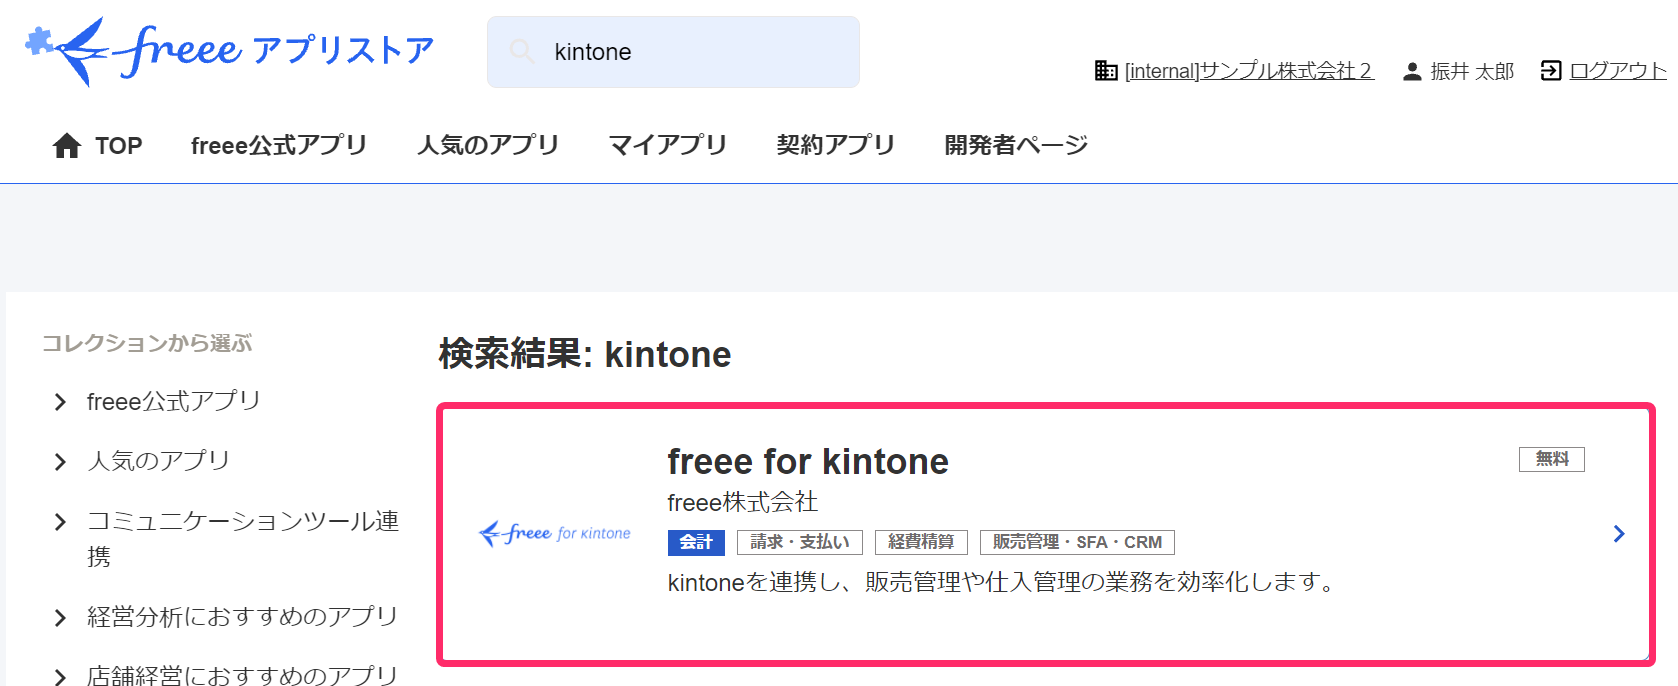 freeeアプリストア画面で「freee for kintone」アプリを指し示しているスクリーンショット